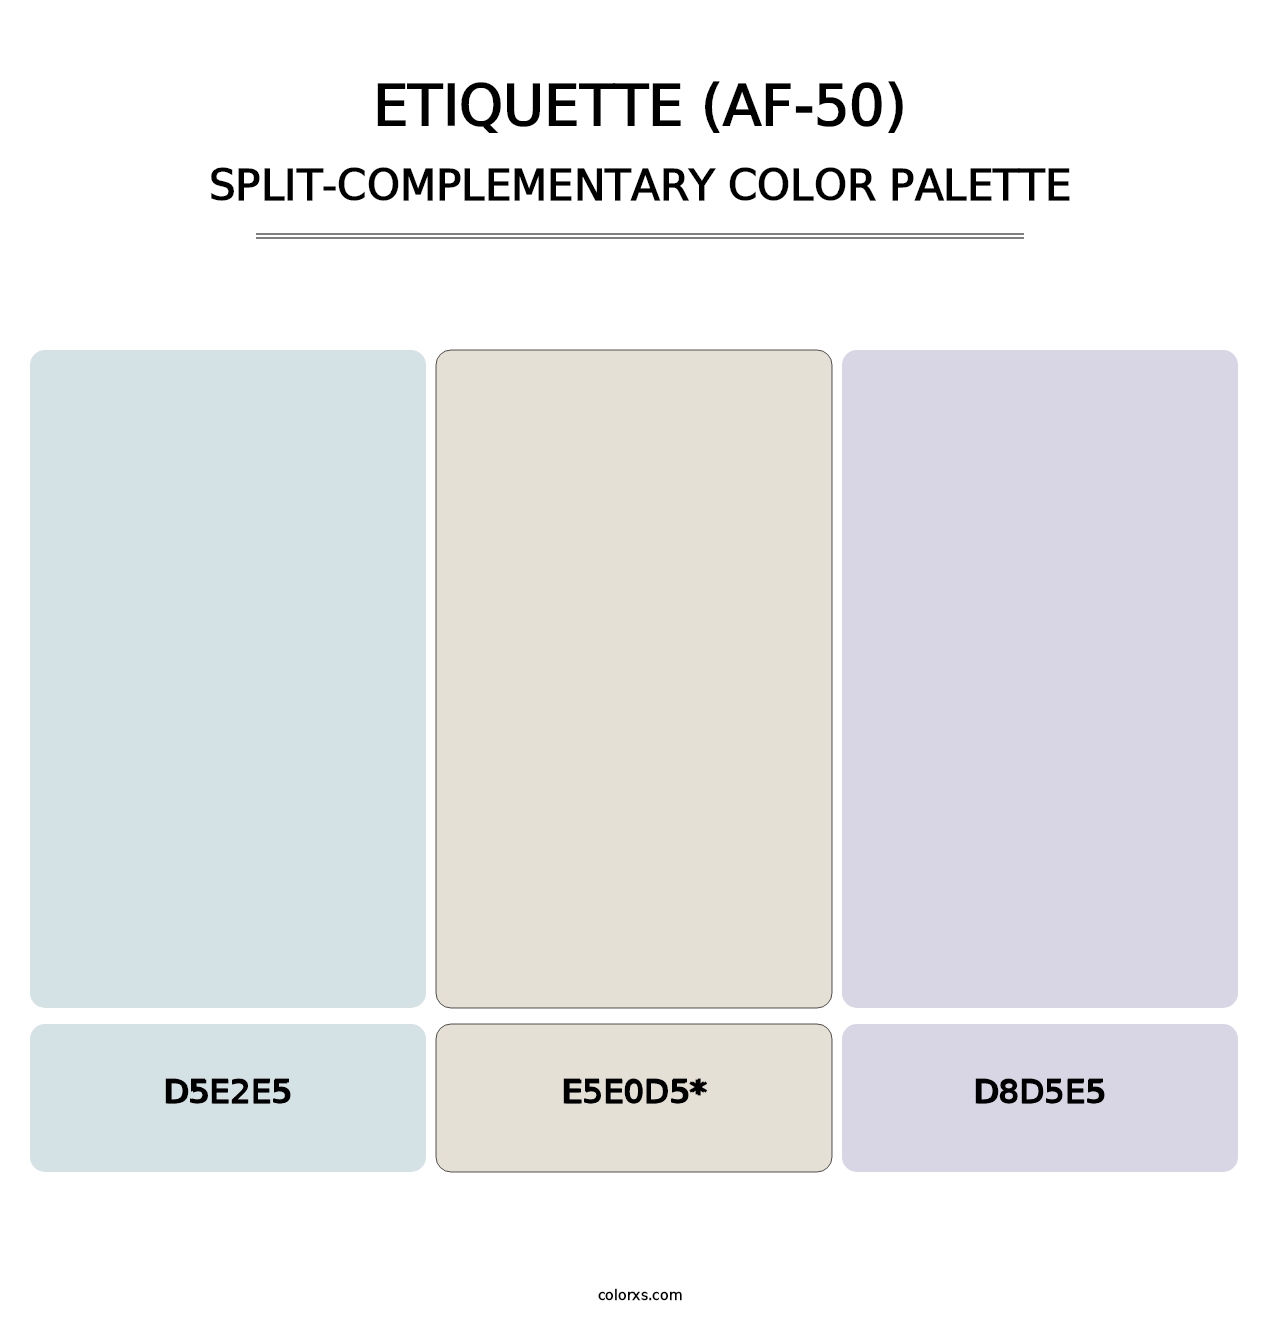 Etiquette (AF-50) - Split-Complementary Color Palette